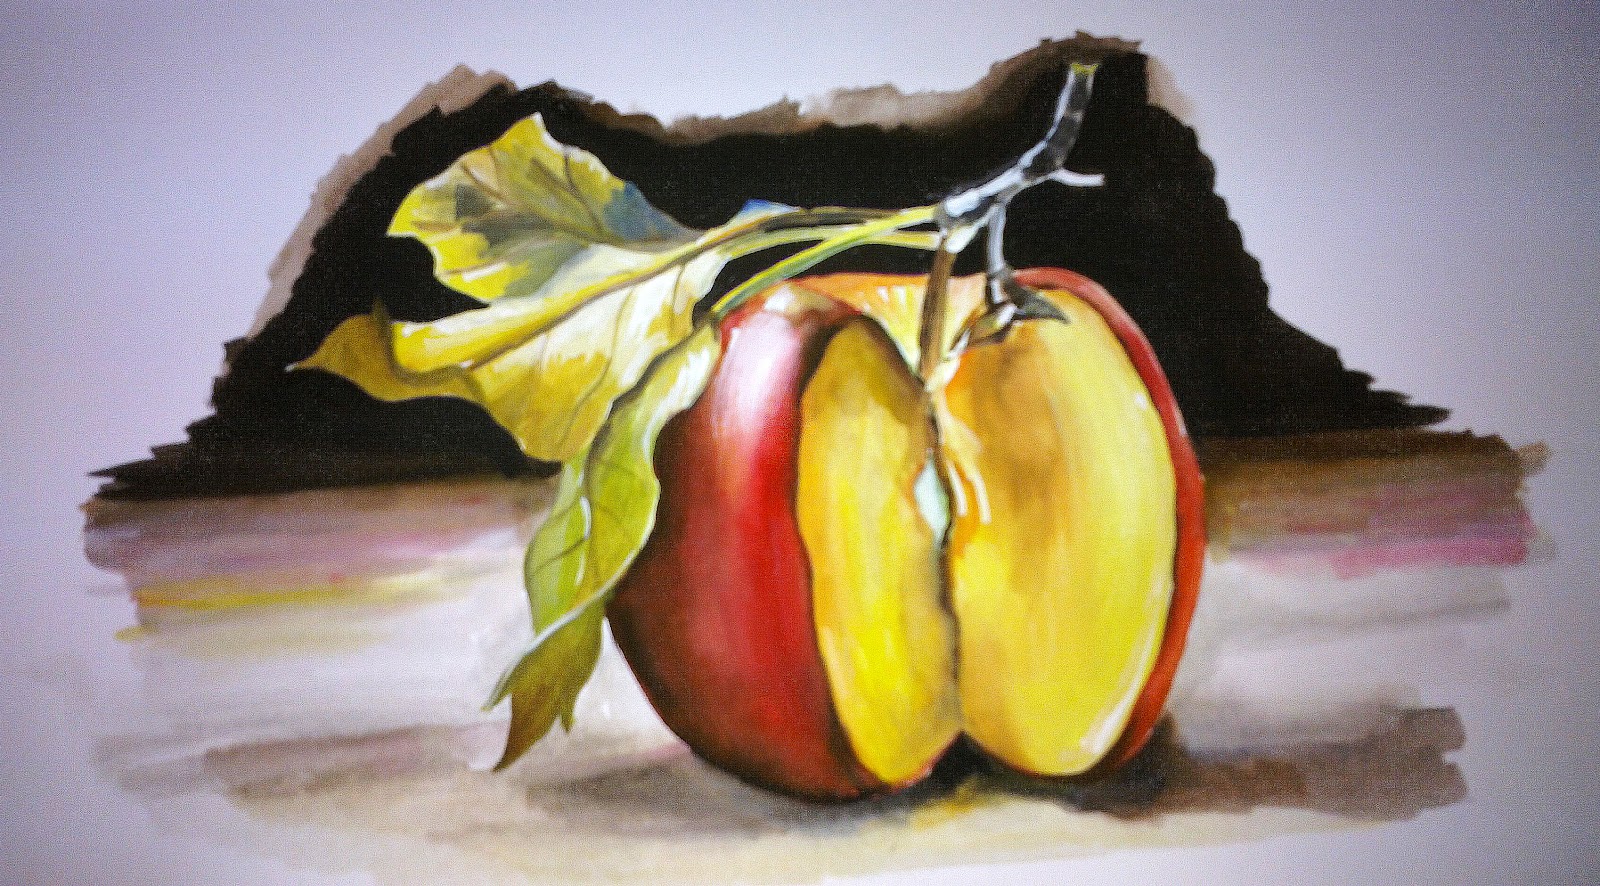  Alat Bantu Mengajar Lukisan  dan Catan Buah buahan 